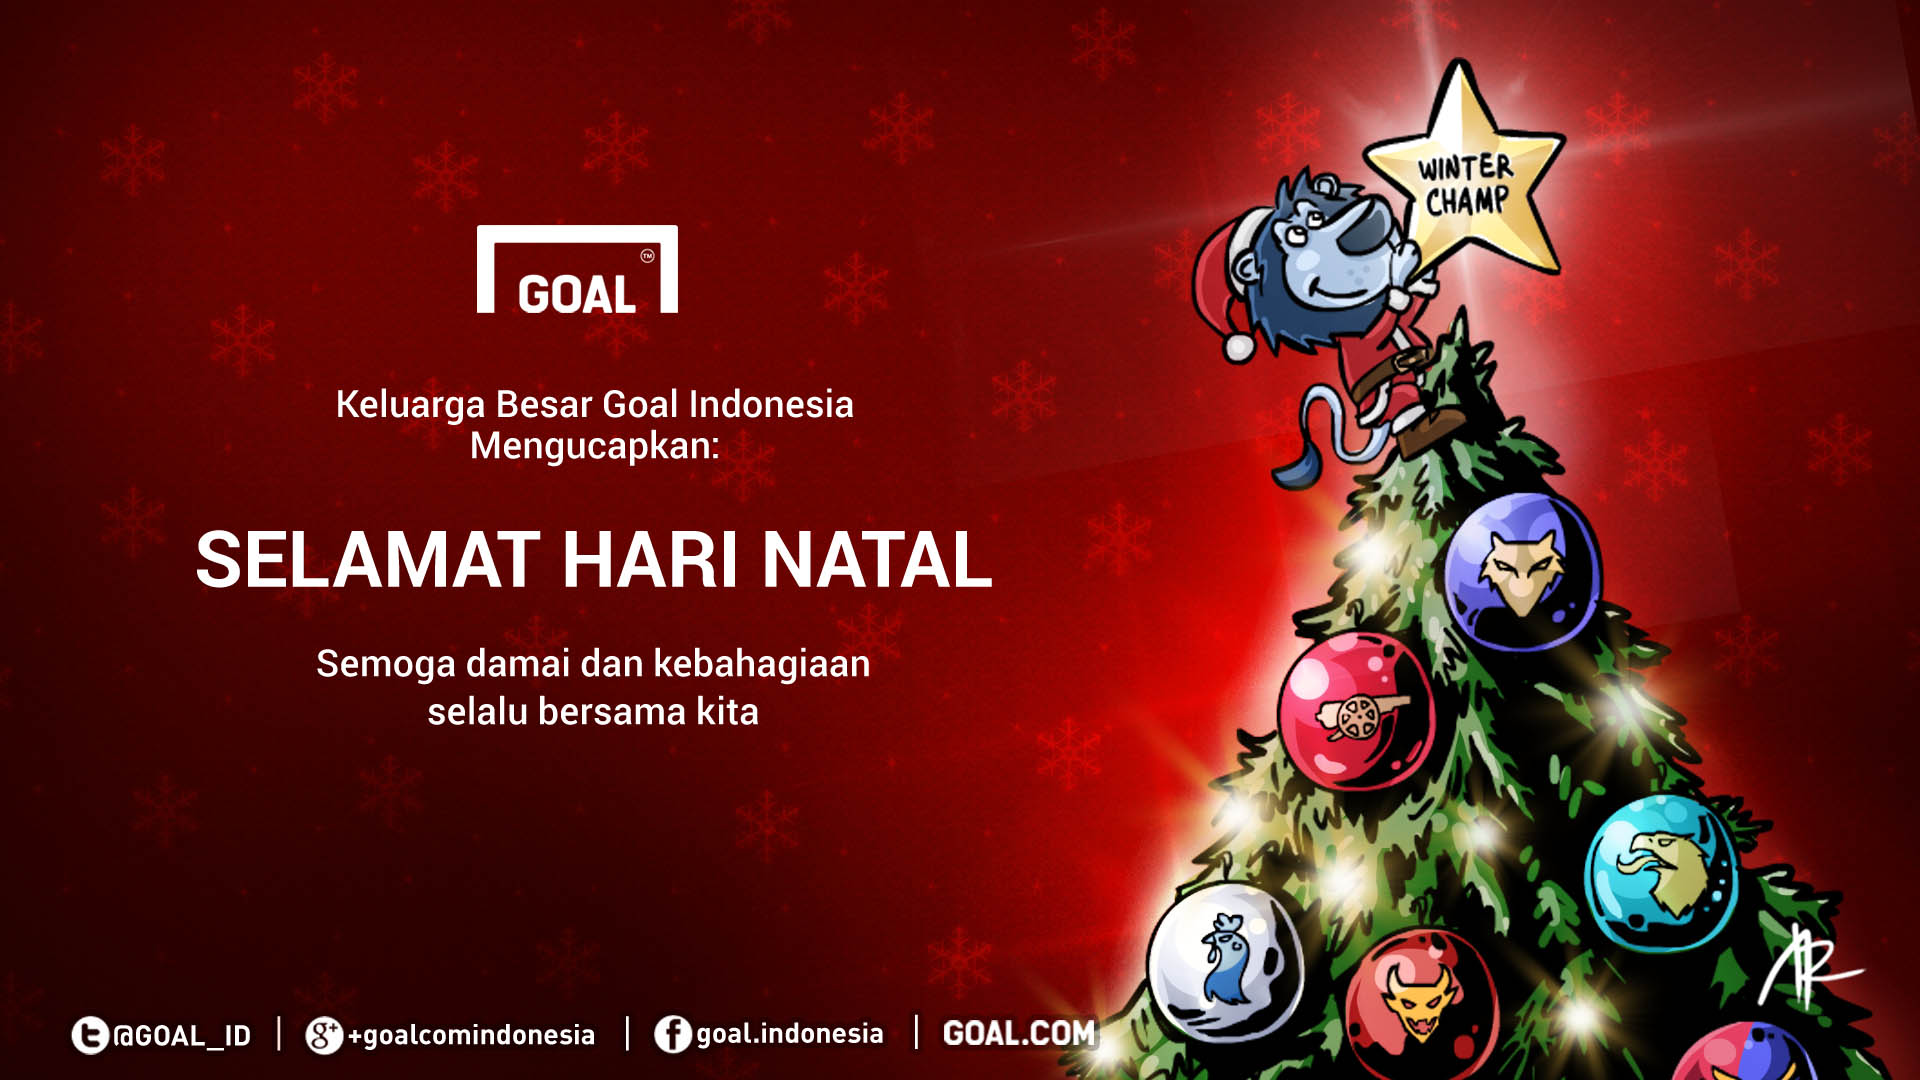 Selamat Hari Natal Goalcom